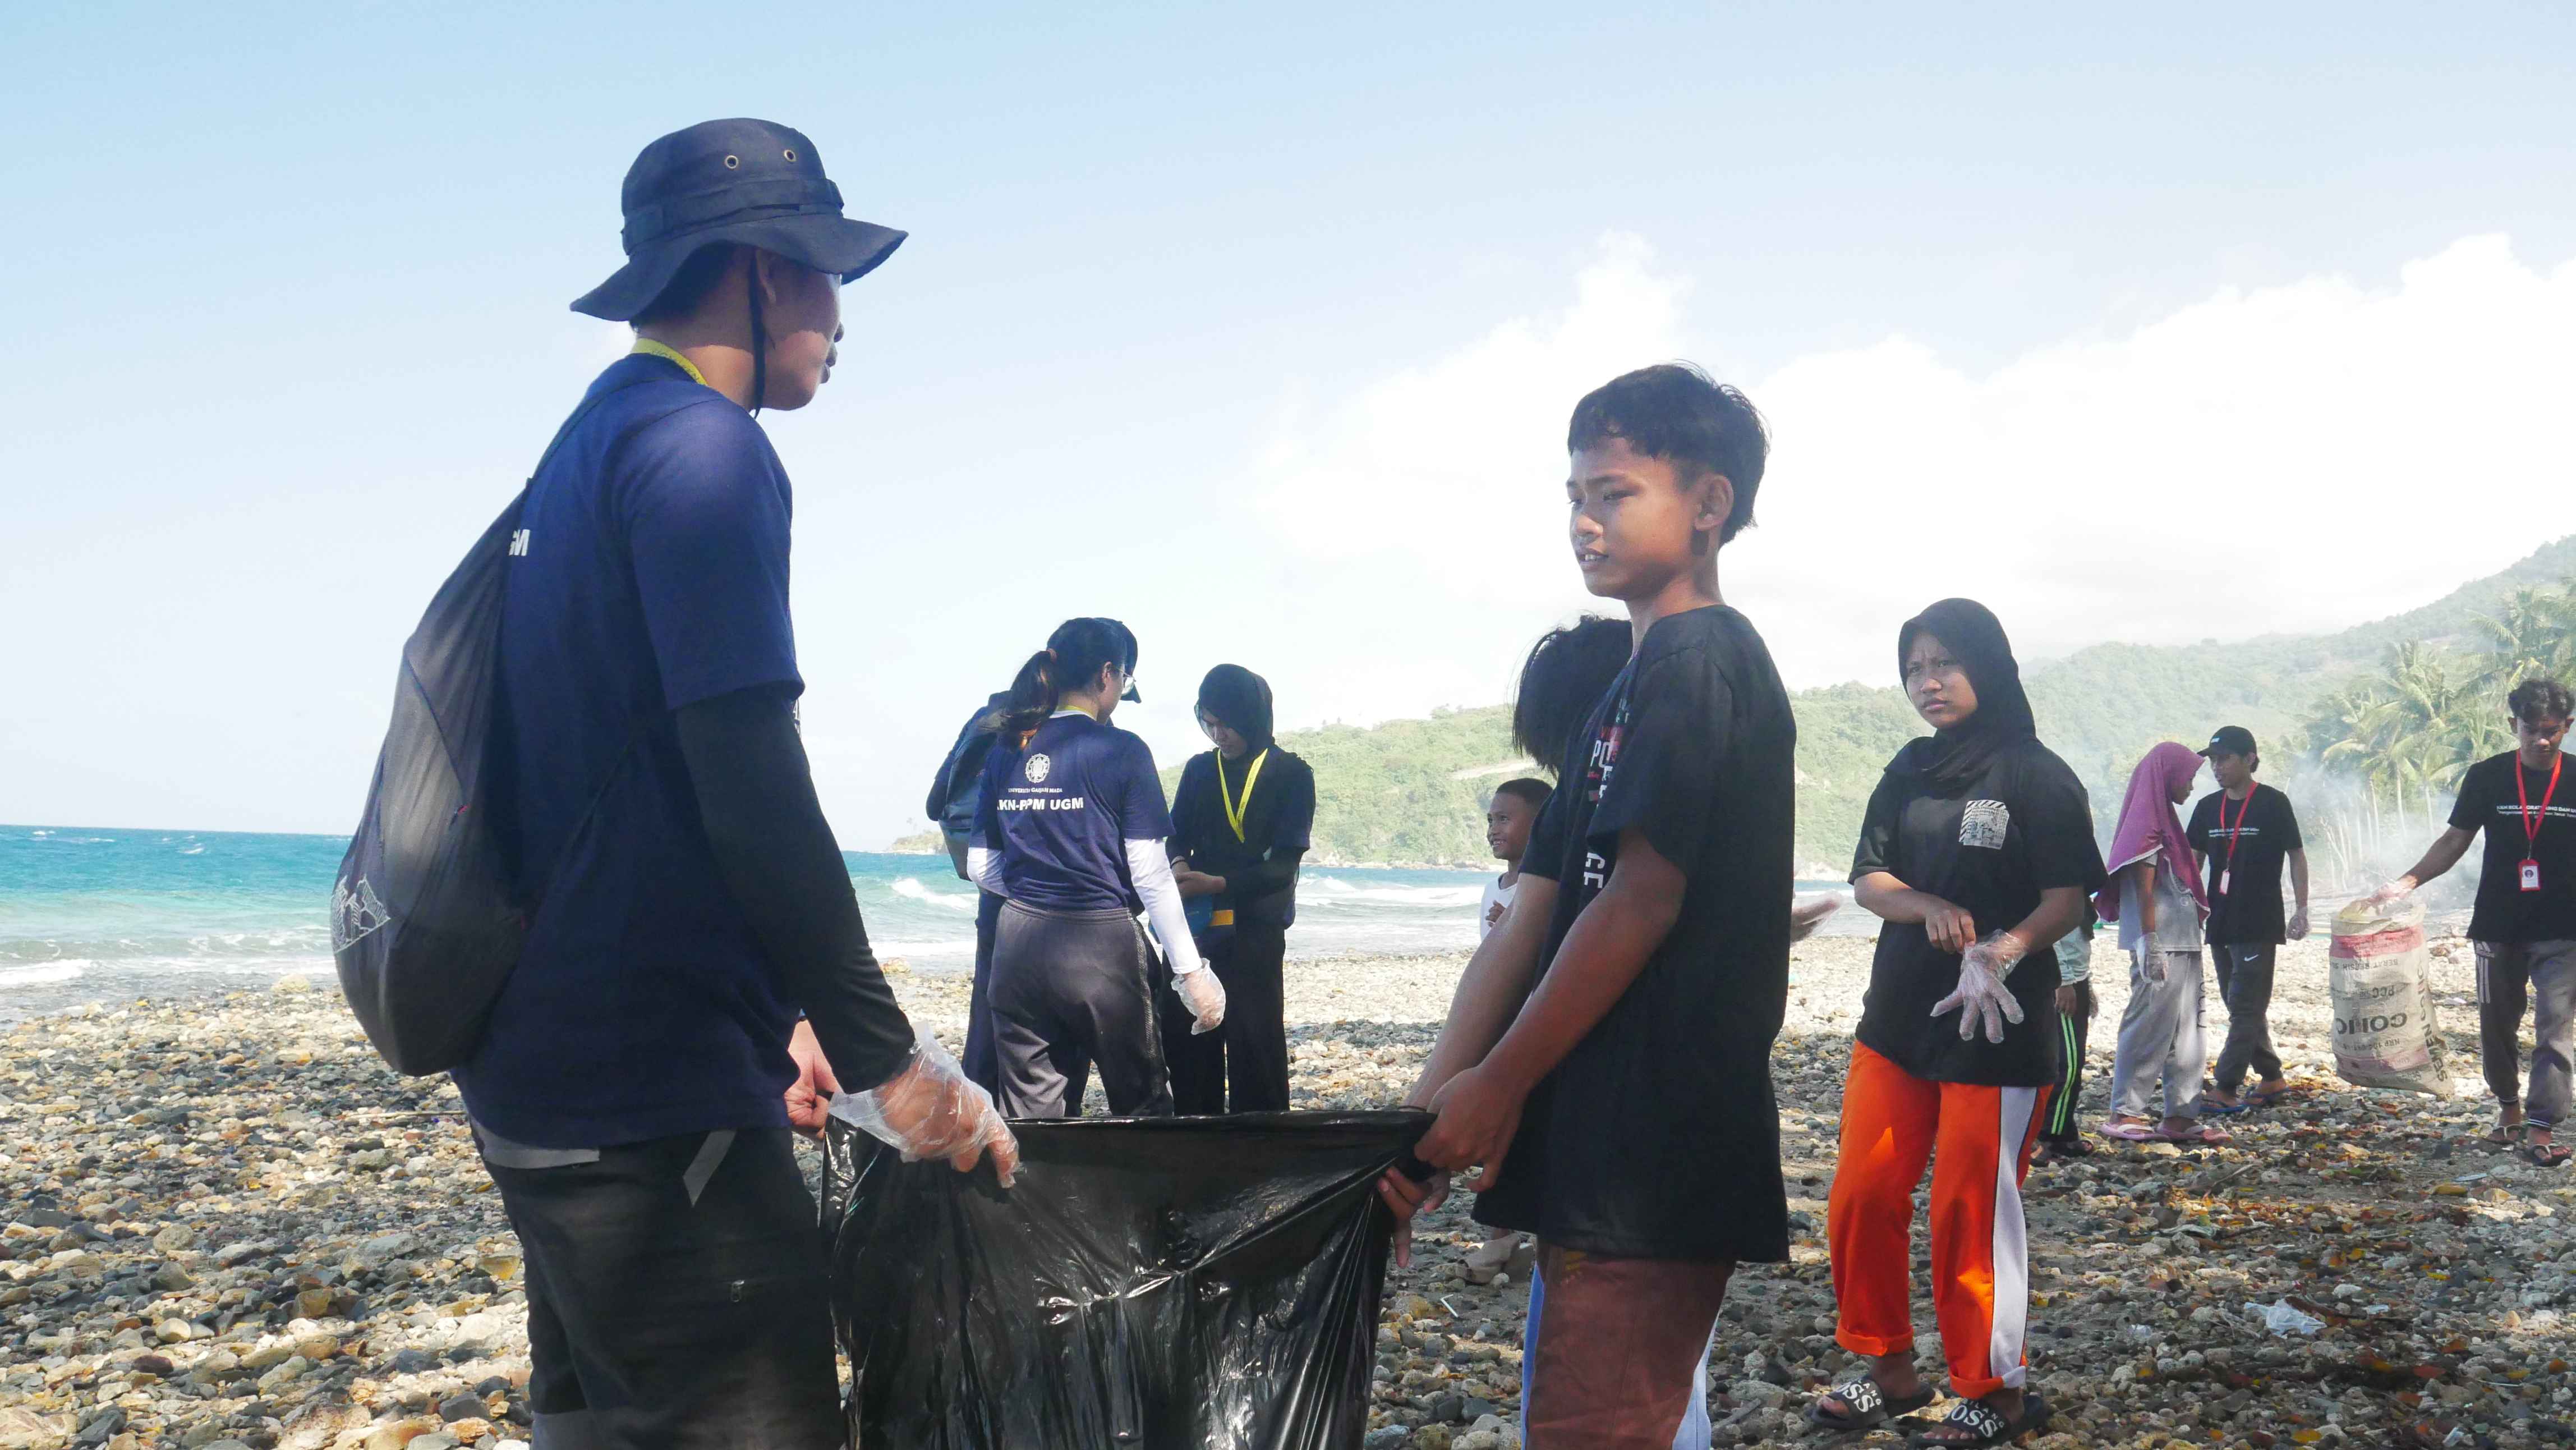 Masyarakat desa turut andil dalam bersih pantai, termasuk yang masih sekolah | Sumber: Fariz Azhami Ahmad